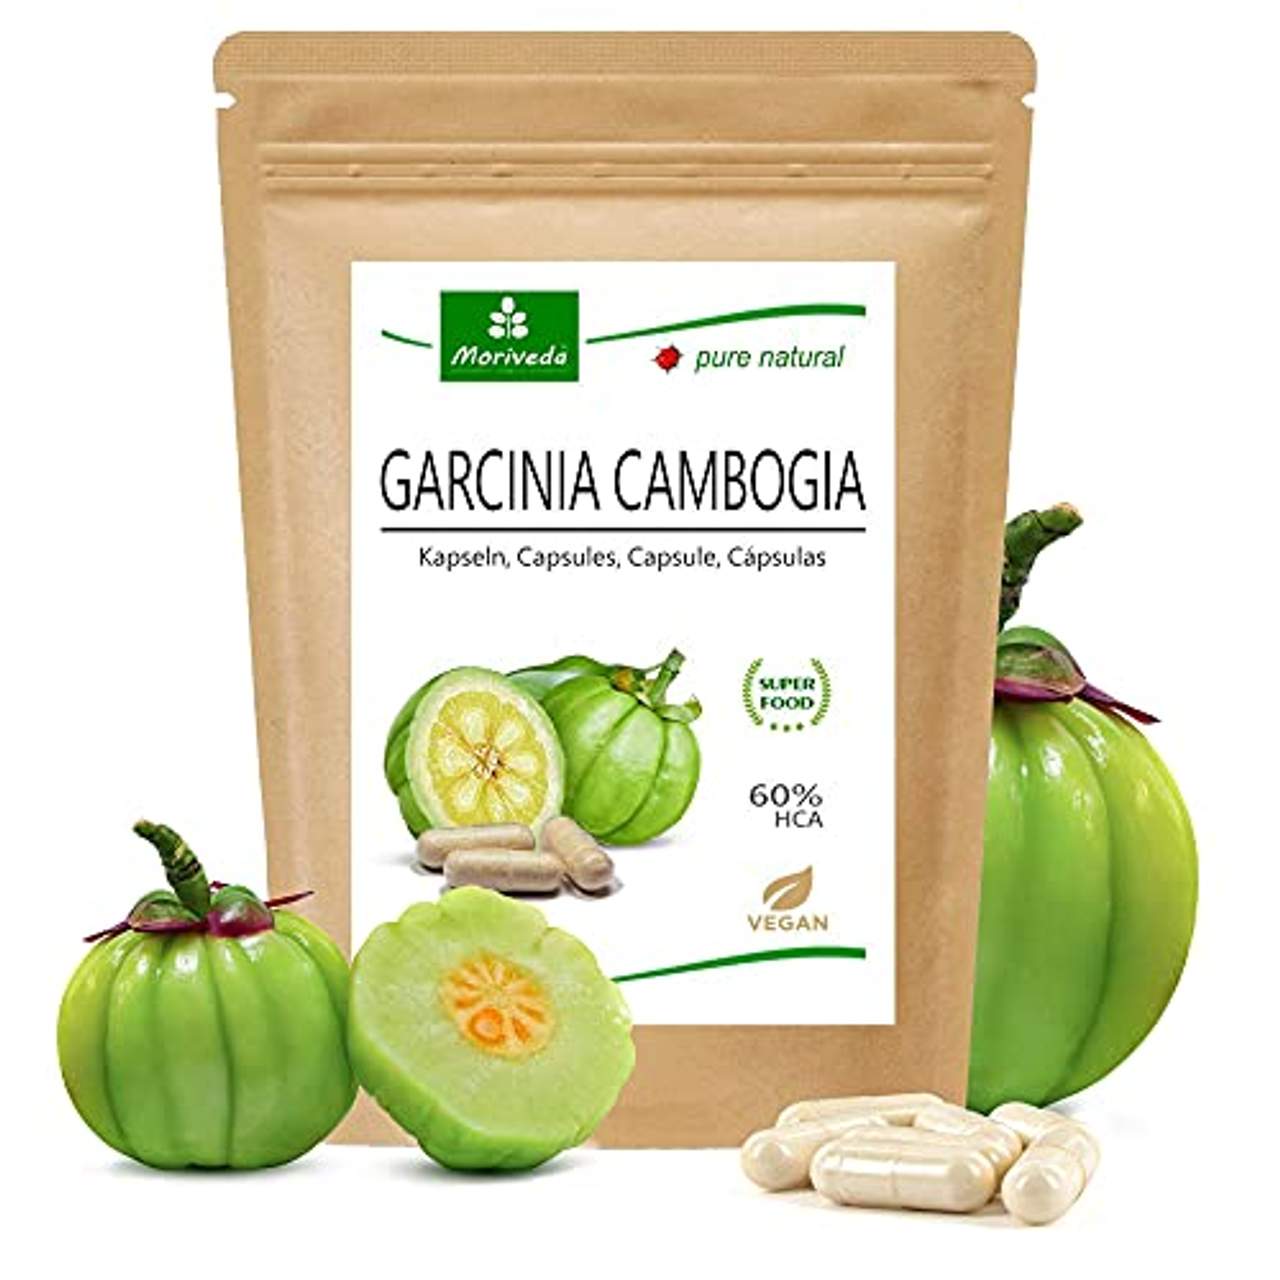 MoriVeda Garcinia Cambogia 90 Kapseln I Natürliche Burner Kapseln als Diät-Unterstützung